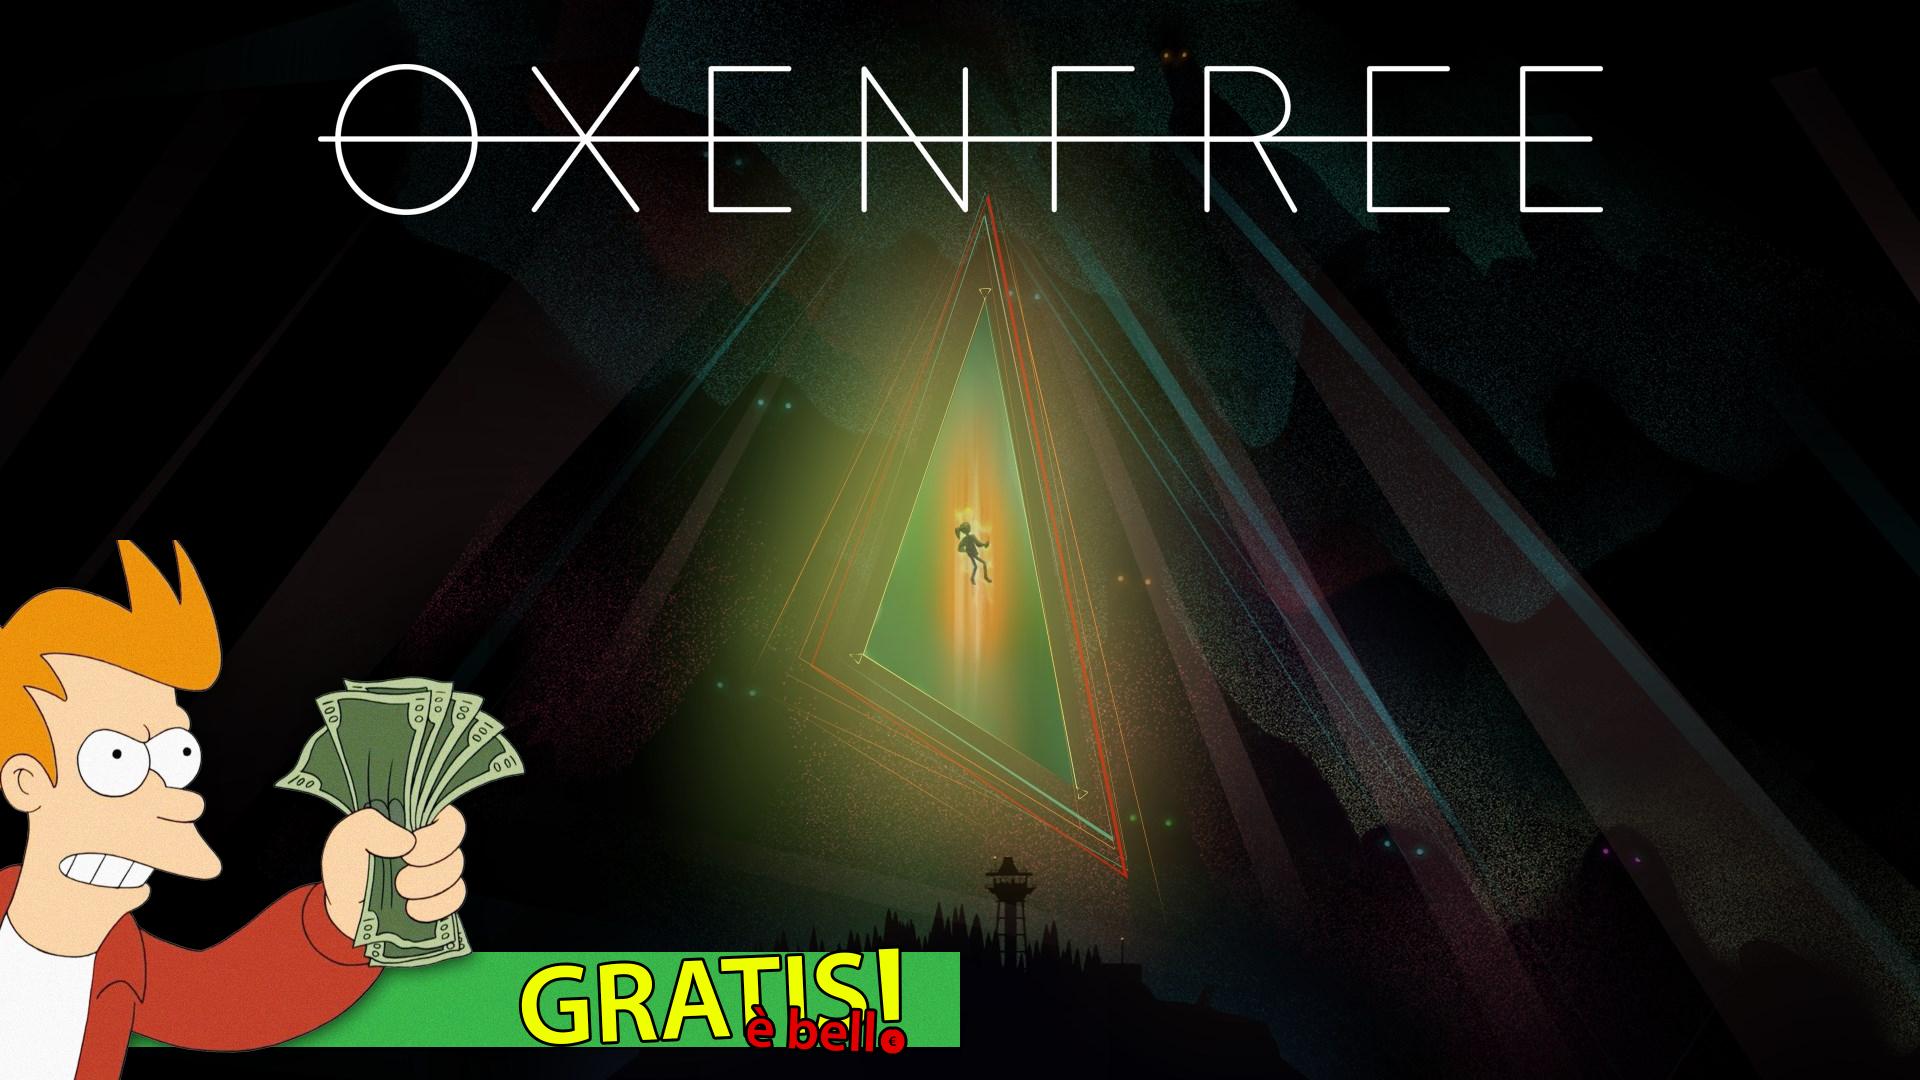 Free Is Nice Oxenfree ビデオゲームについて話しましょう